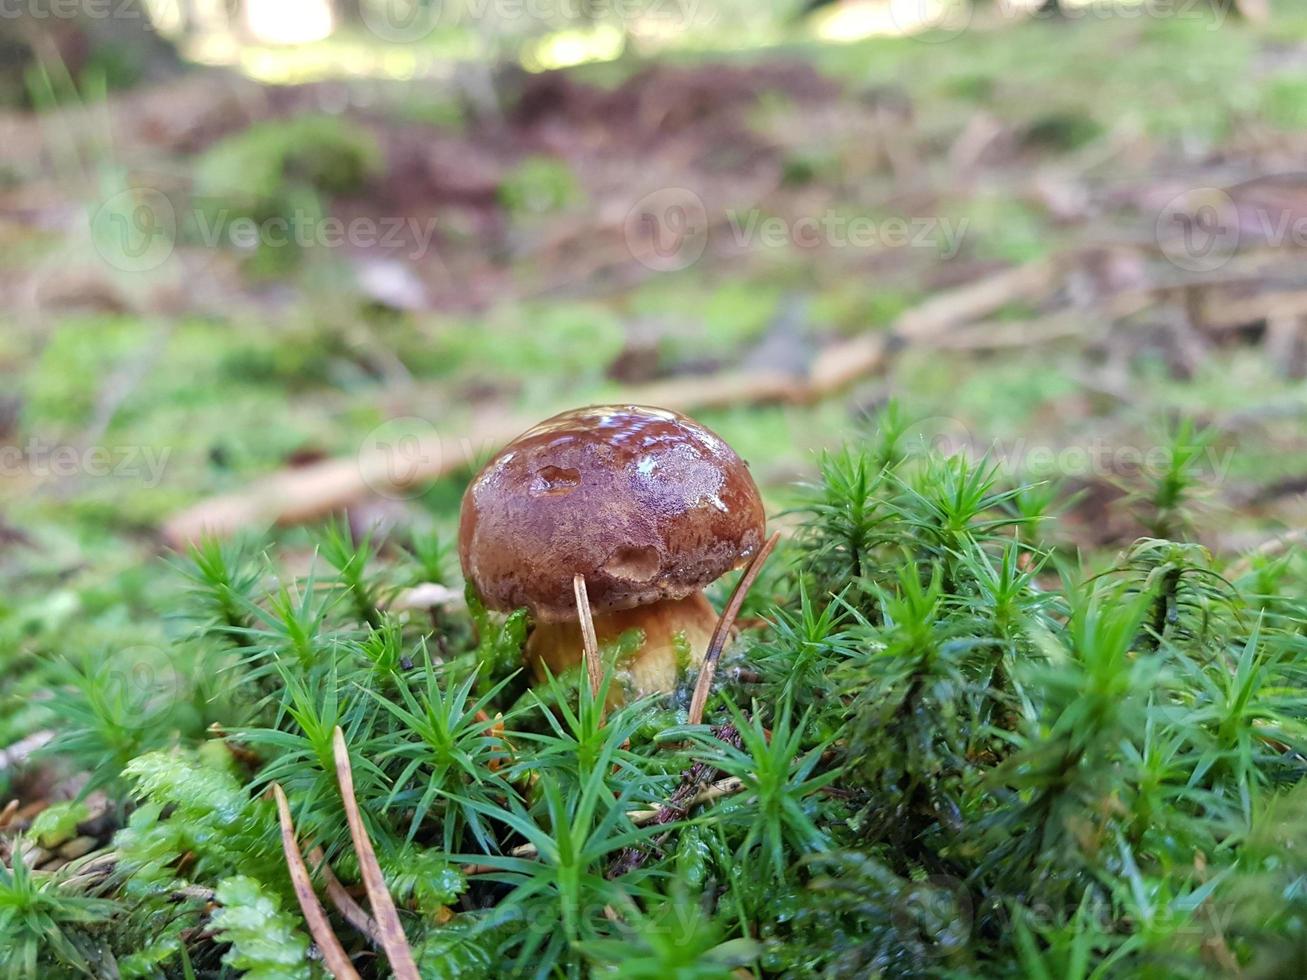 svamp från marken i en skog foto